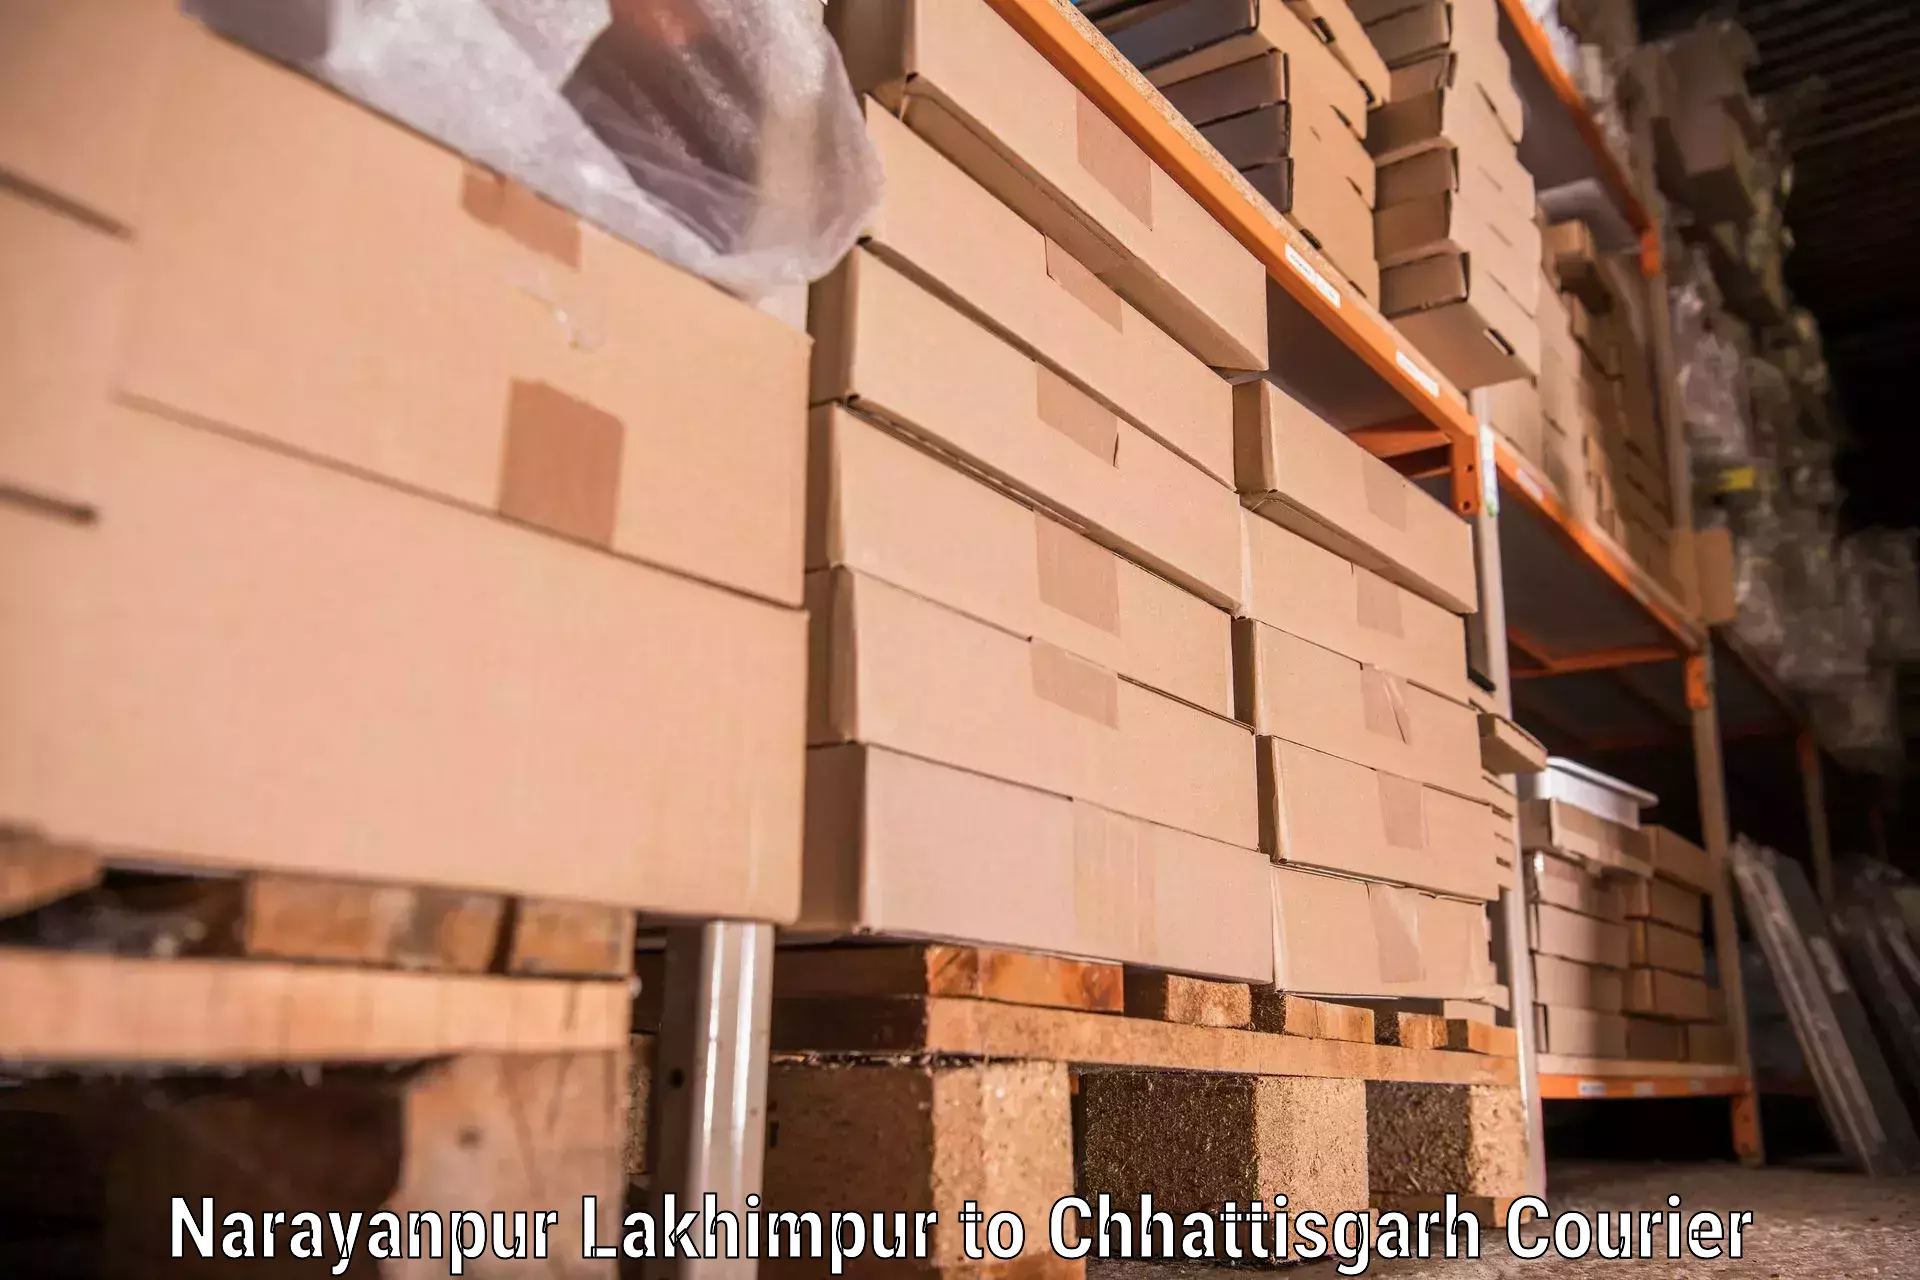 Furniture transport solutions in Narayanpur Lakhimpur to Pratappur